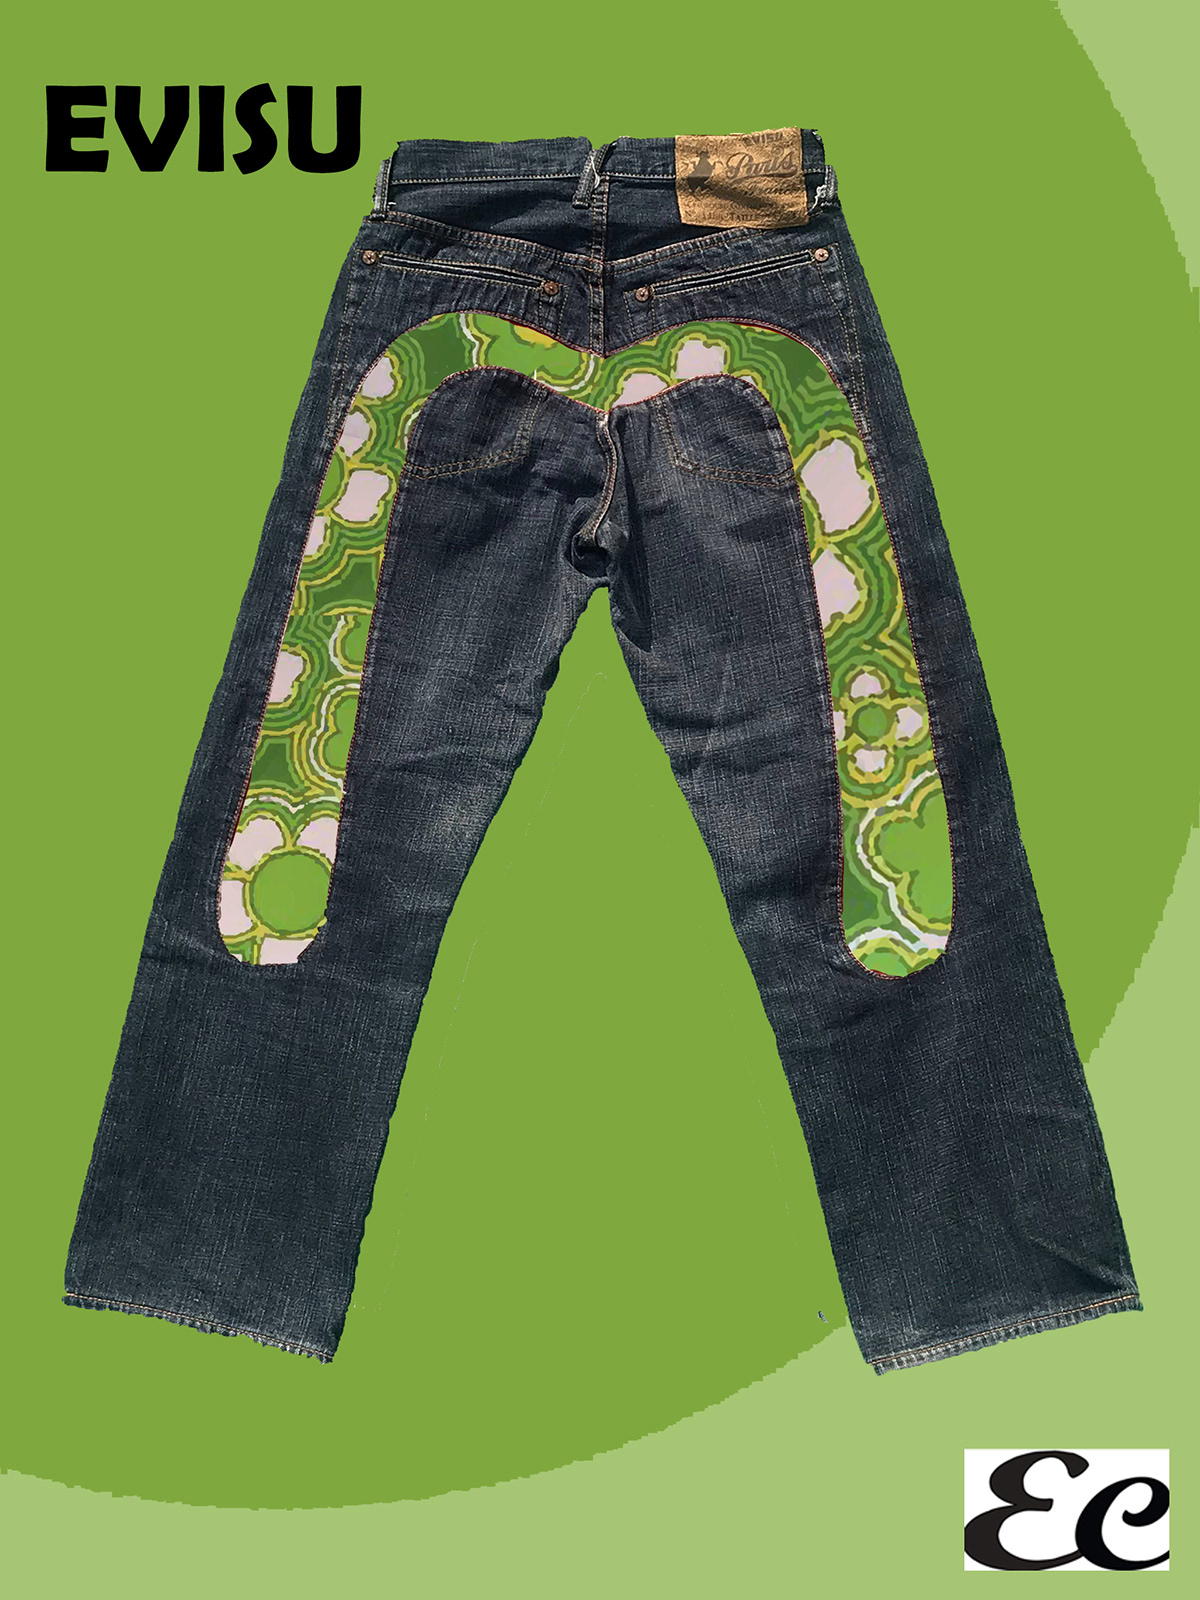 Bandana colori jeans levi's moda anni 90 pittura RIVISITAZIONE sonia terk tela texture